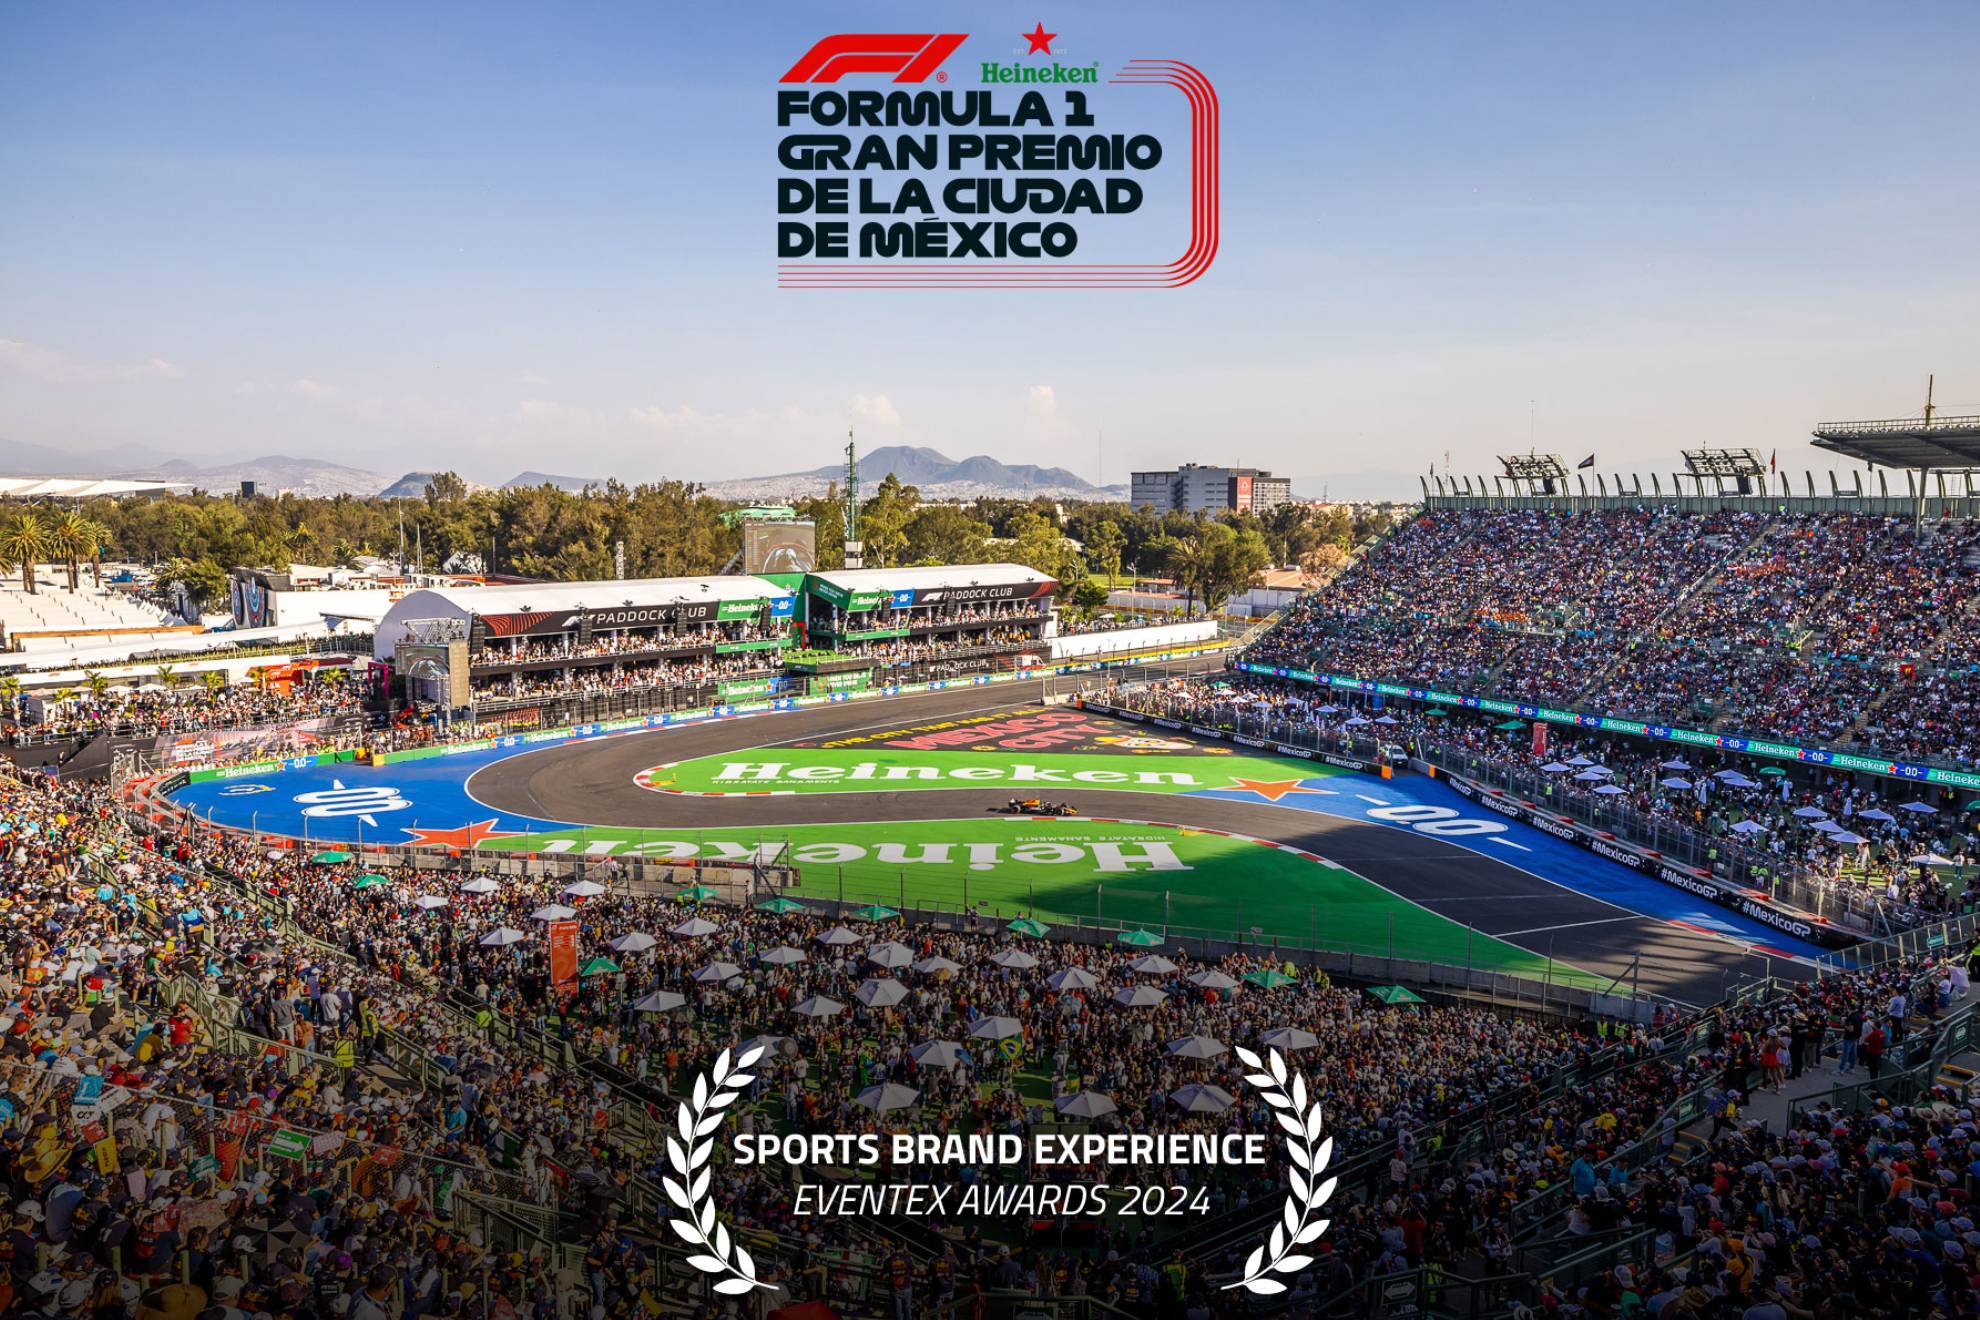 El evento de F1 en CDMX fue galardonado por la agencia de marketing